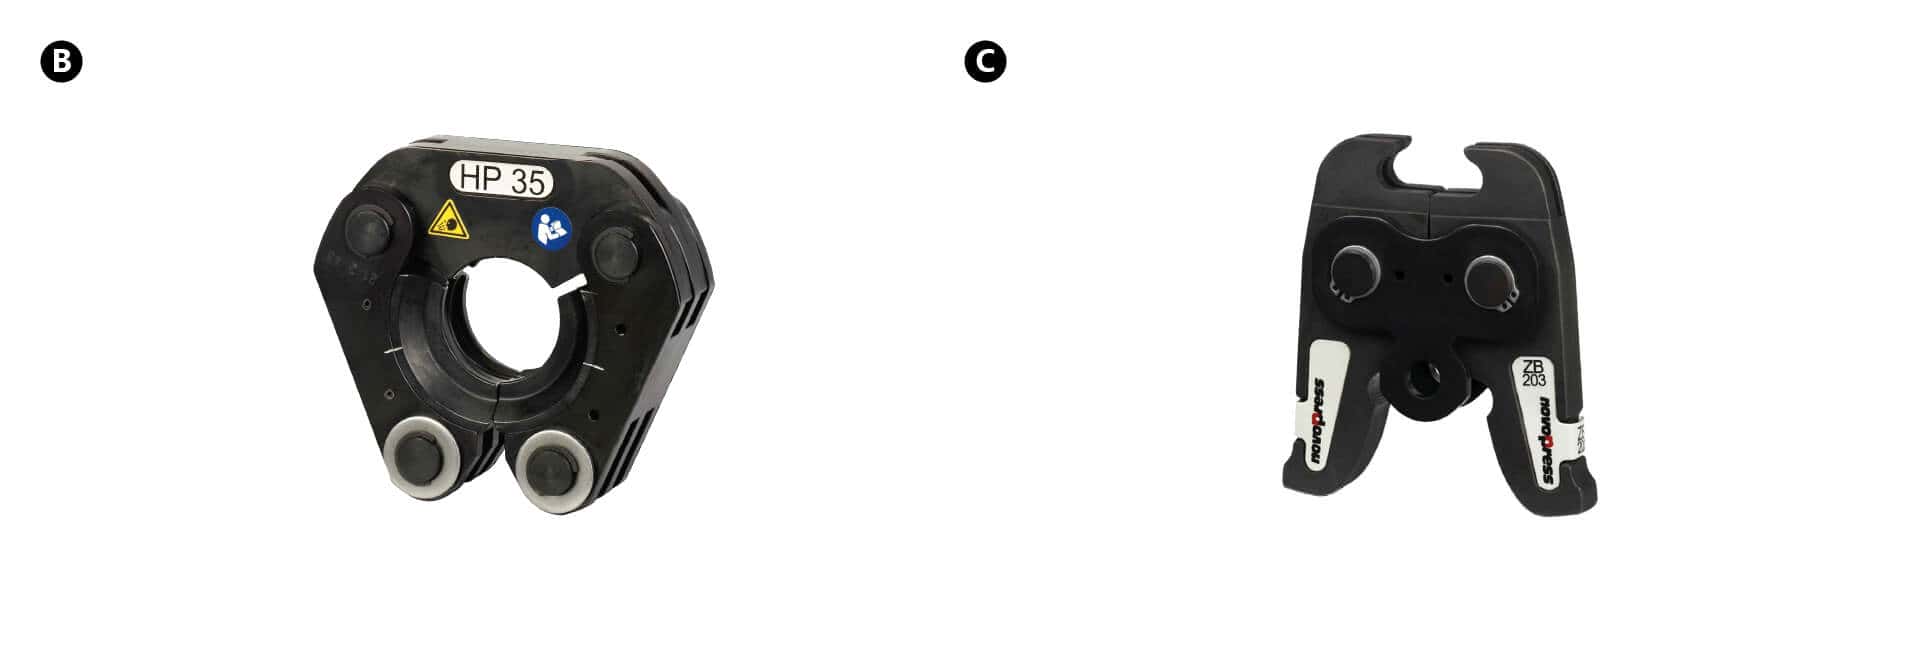 KAN-therm — Sistēma Sprinkler Inox — Novopress saspiedējs ar žokļiem, adapteri un savilcēju